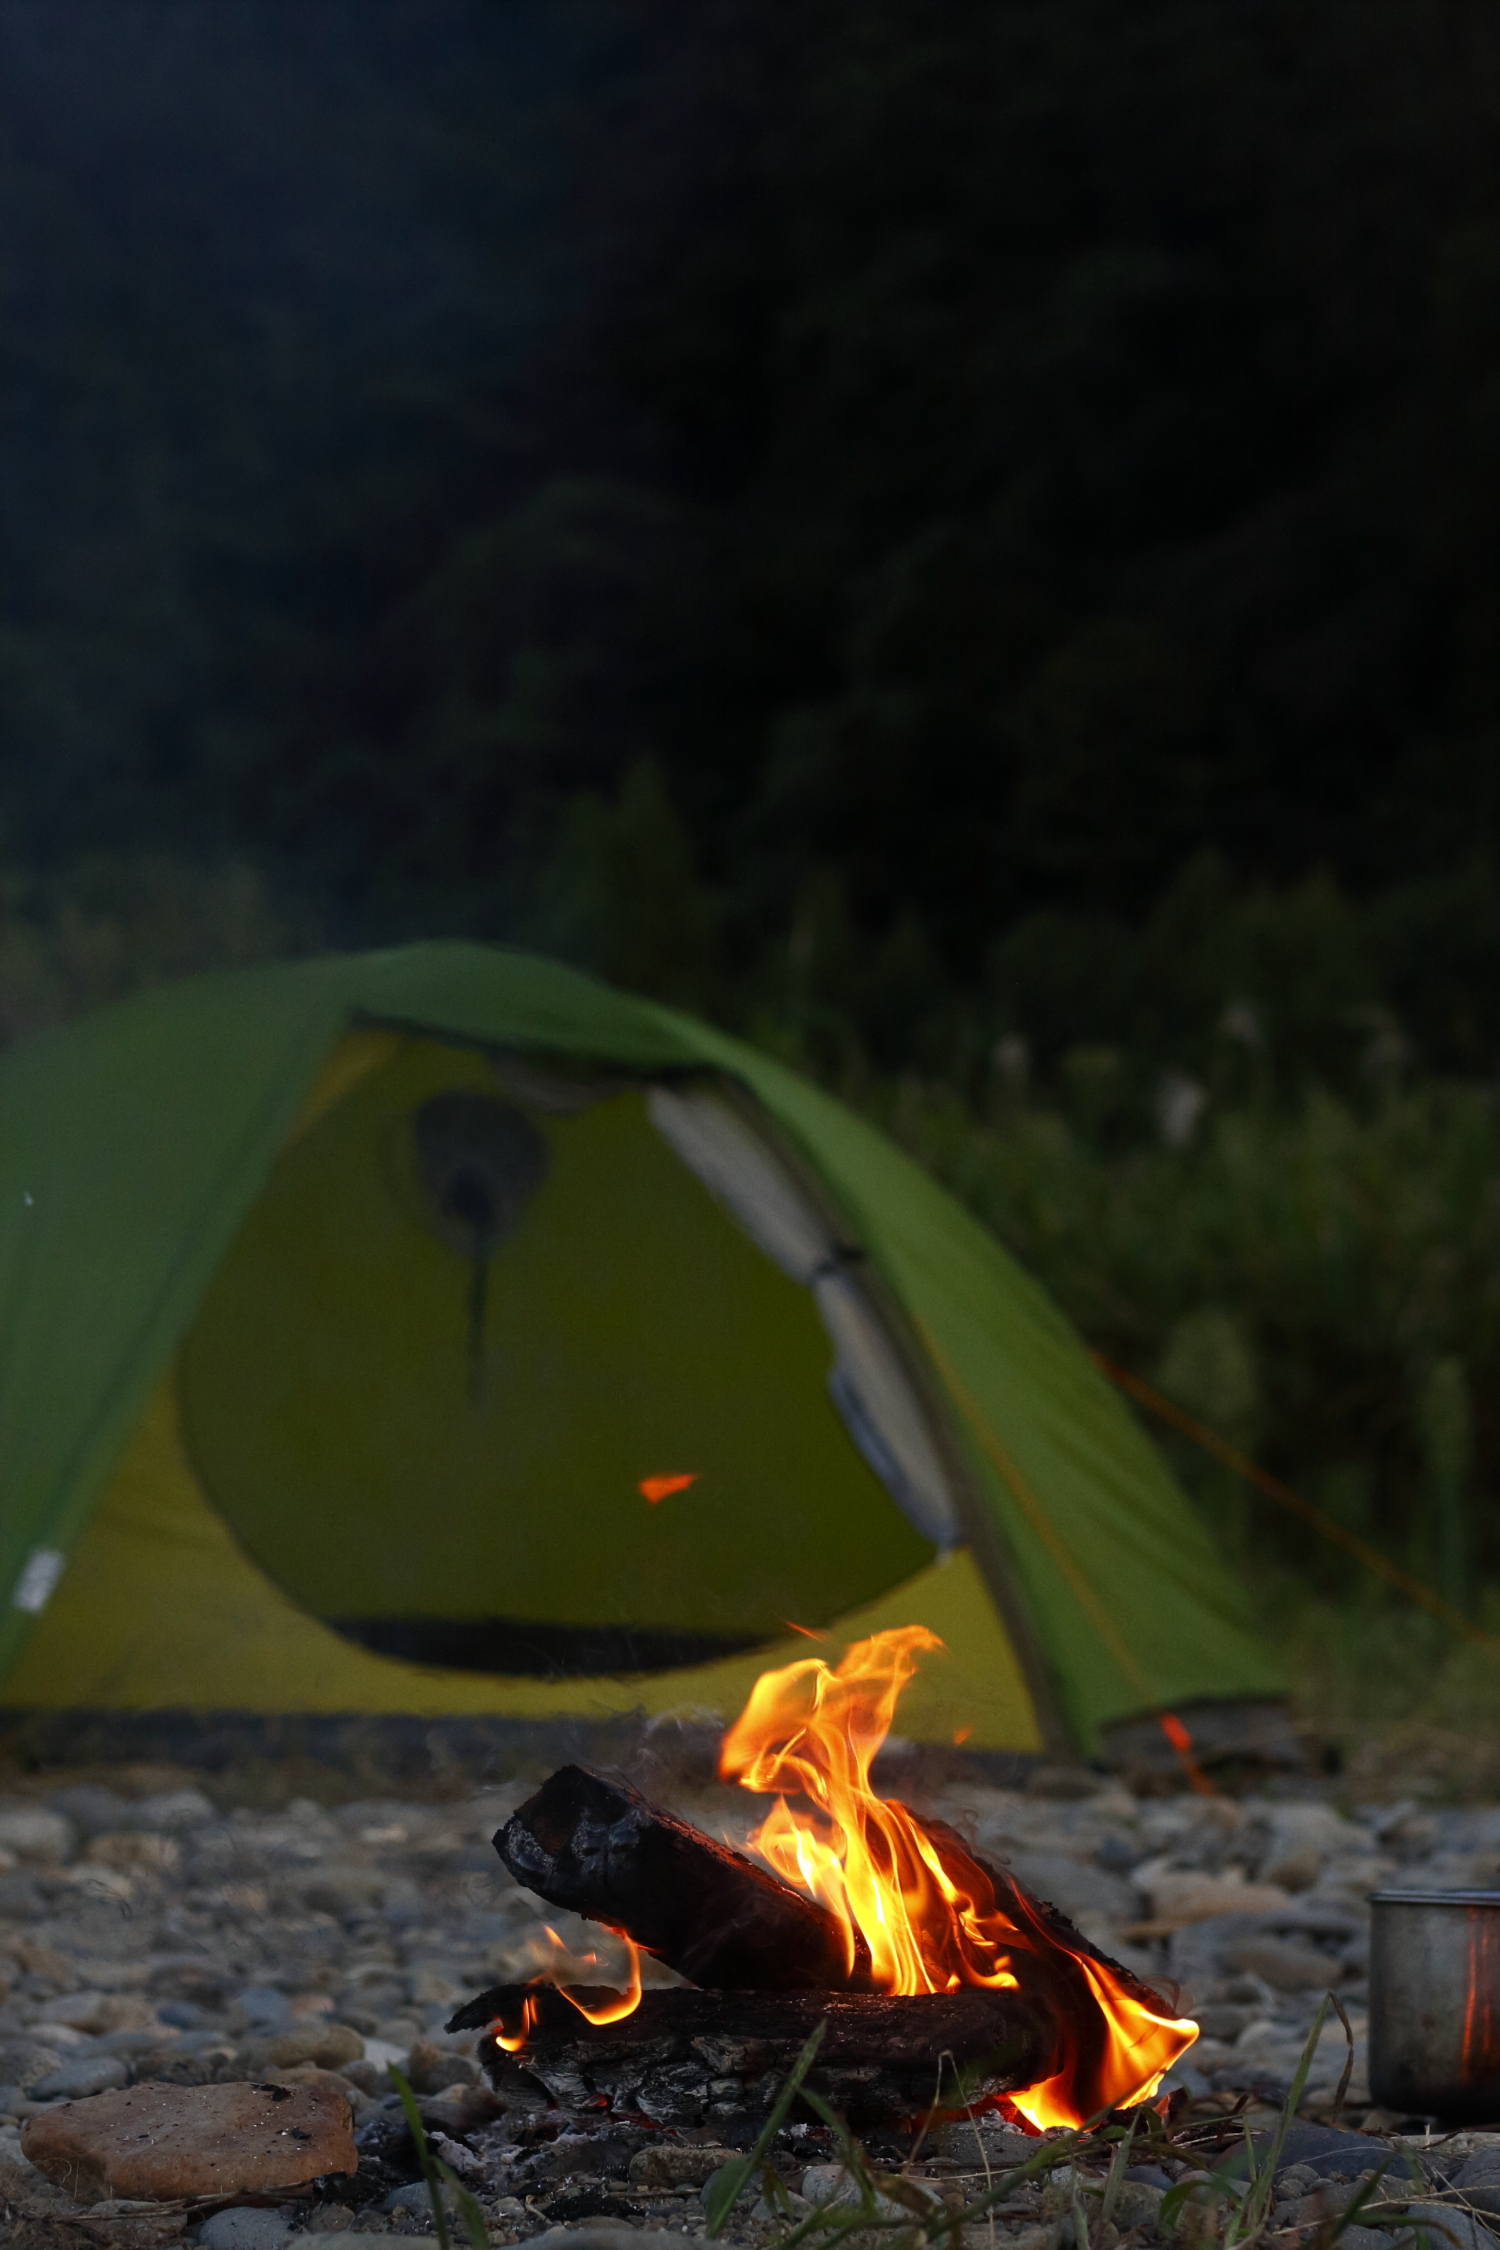 キャンプで焚き火をきれいに後始末する方法とは 焚き火のコツ Be Pal キャンプ アウトドア 自然派生活の情報源ビーパル